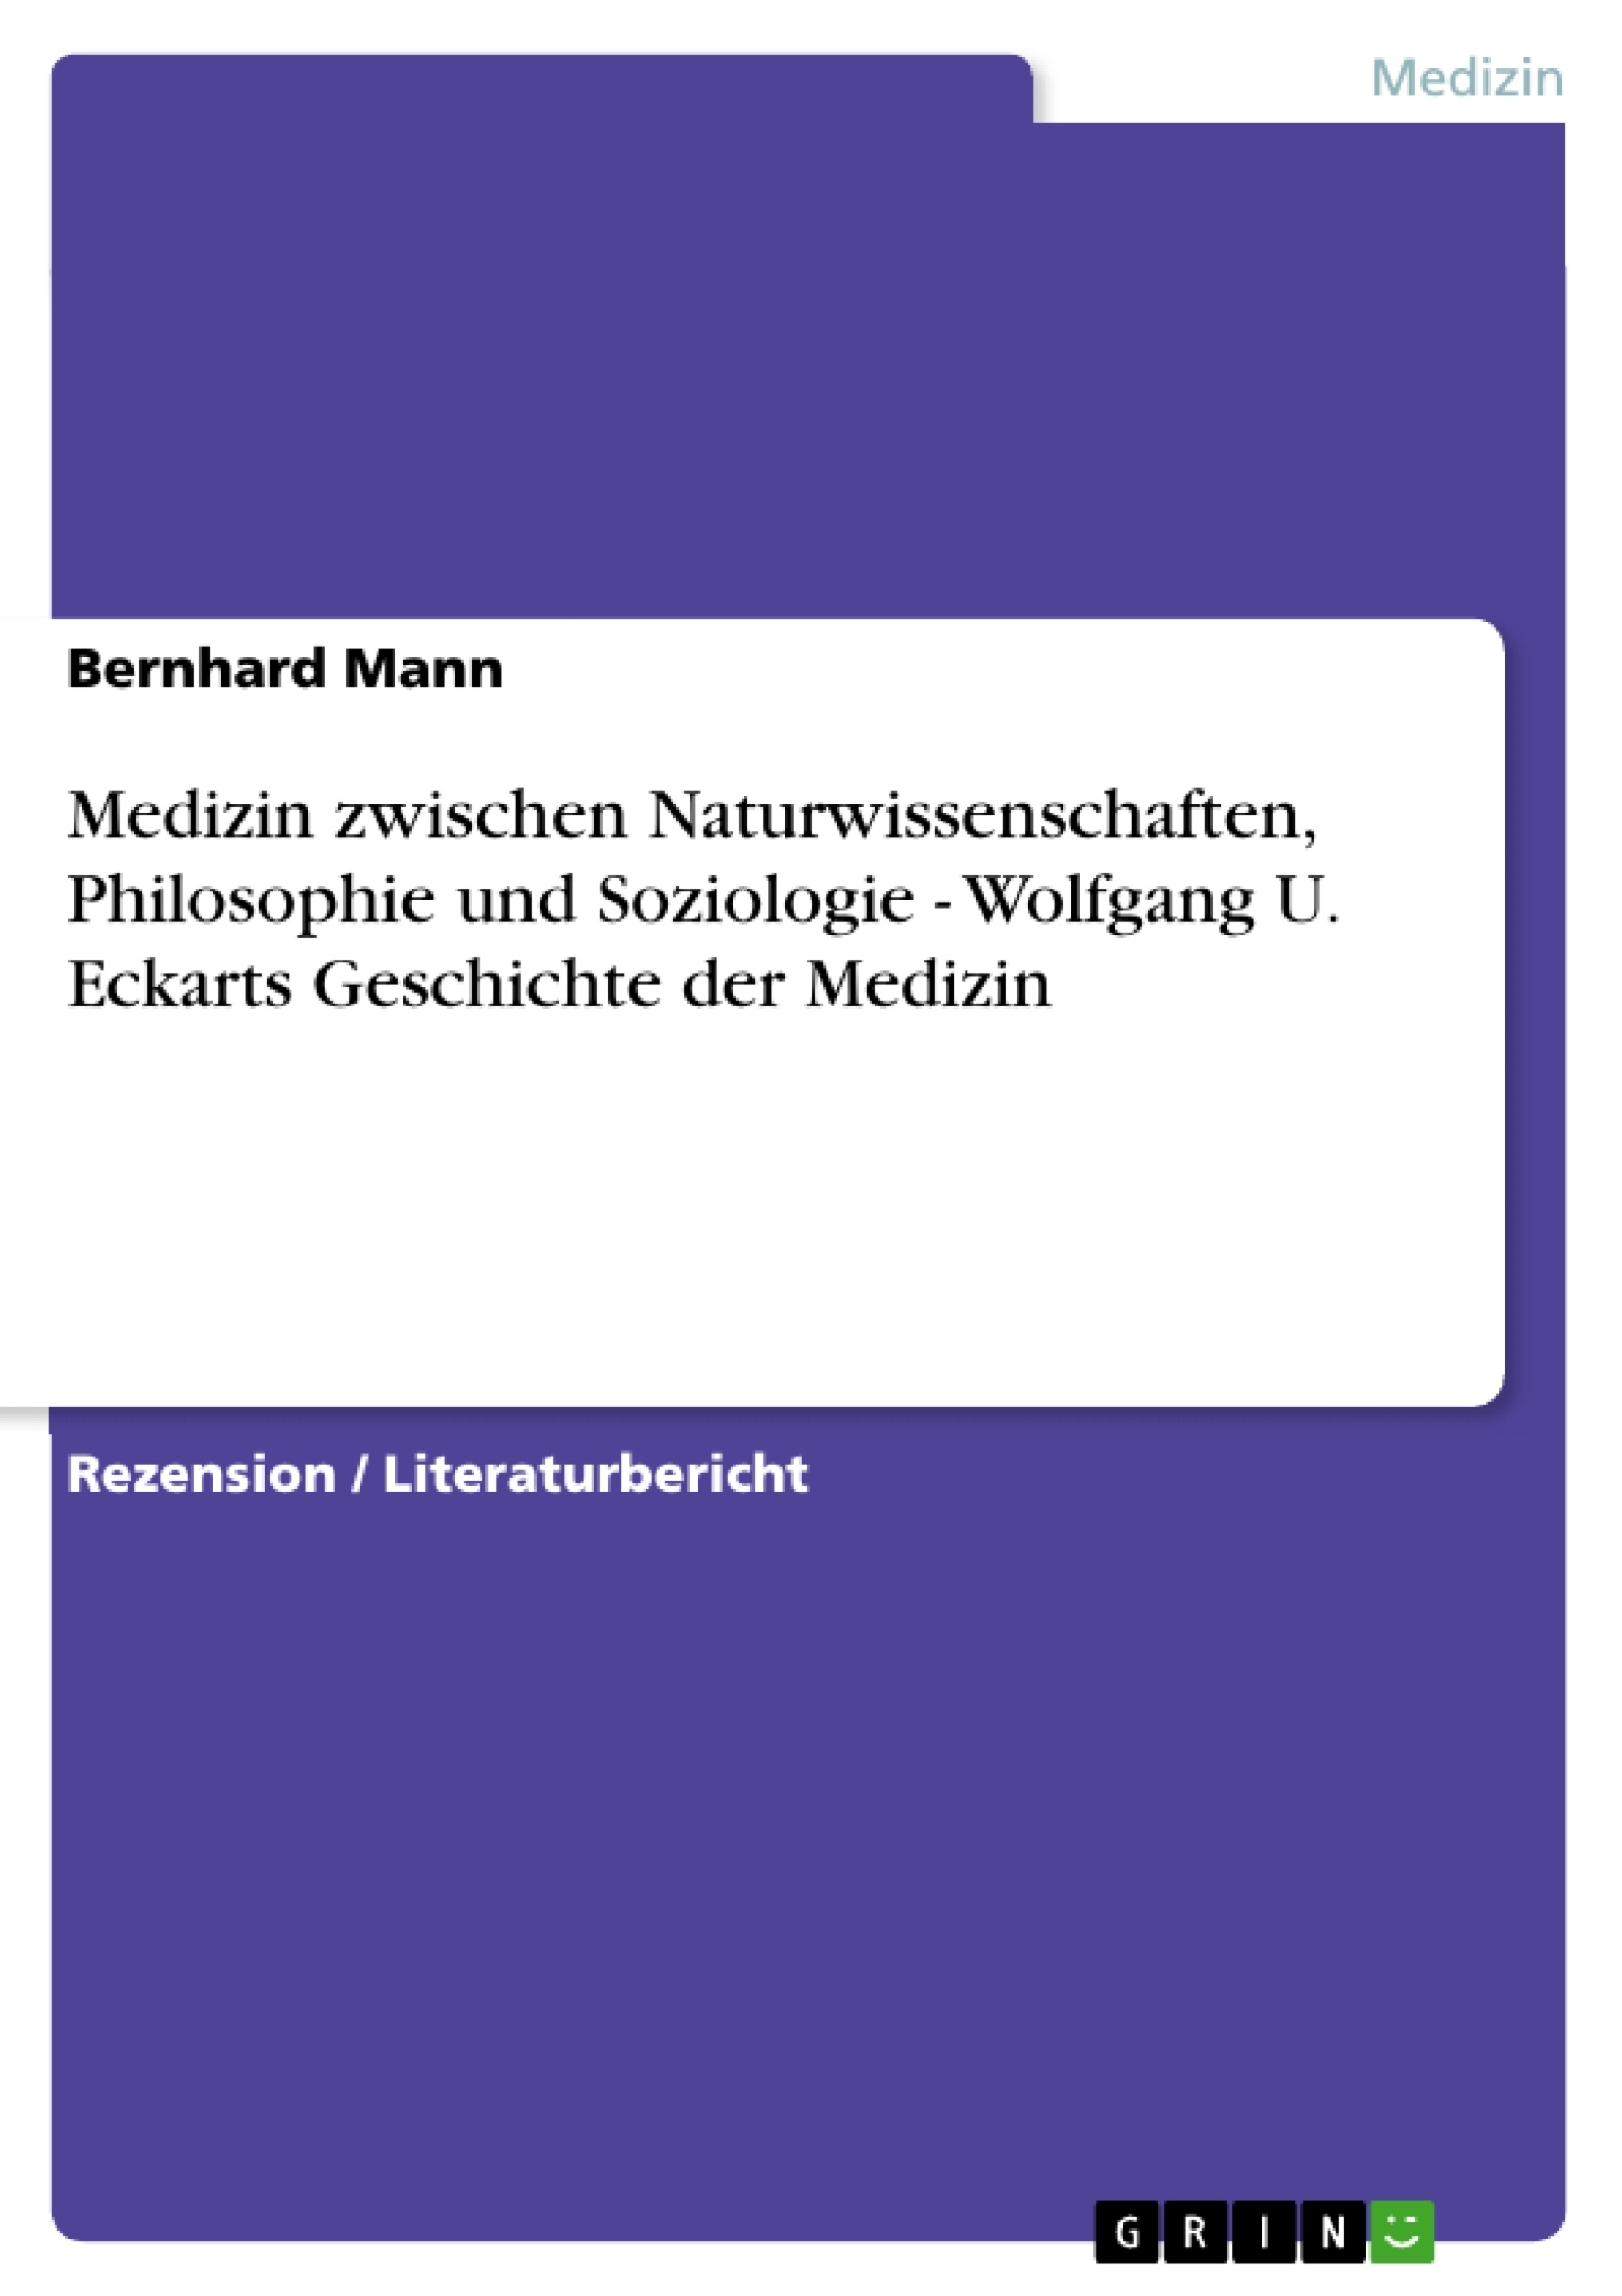 Titre: Medizin zwischen Naturwissenschaften, Philosophie und Soziologie - Wolfgang U. Eckarts Geschichte der Medizin